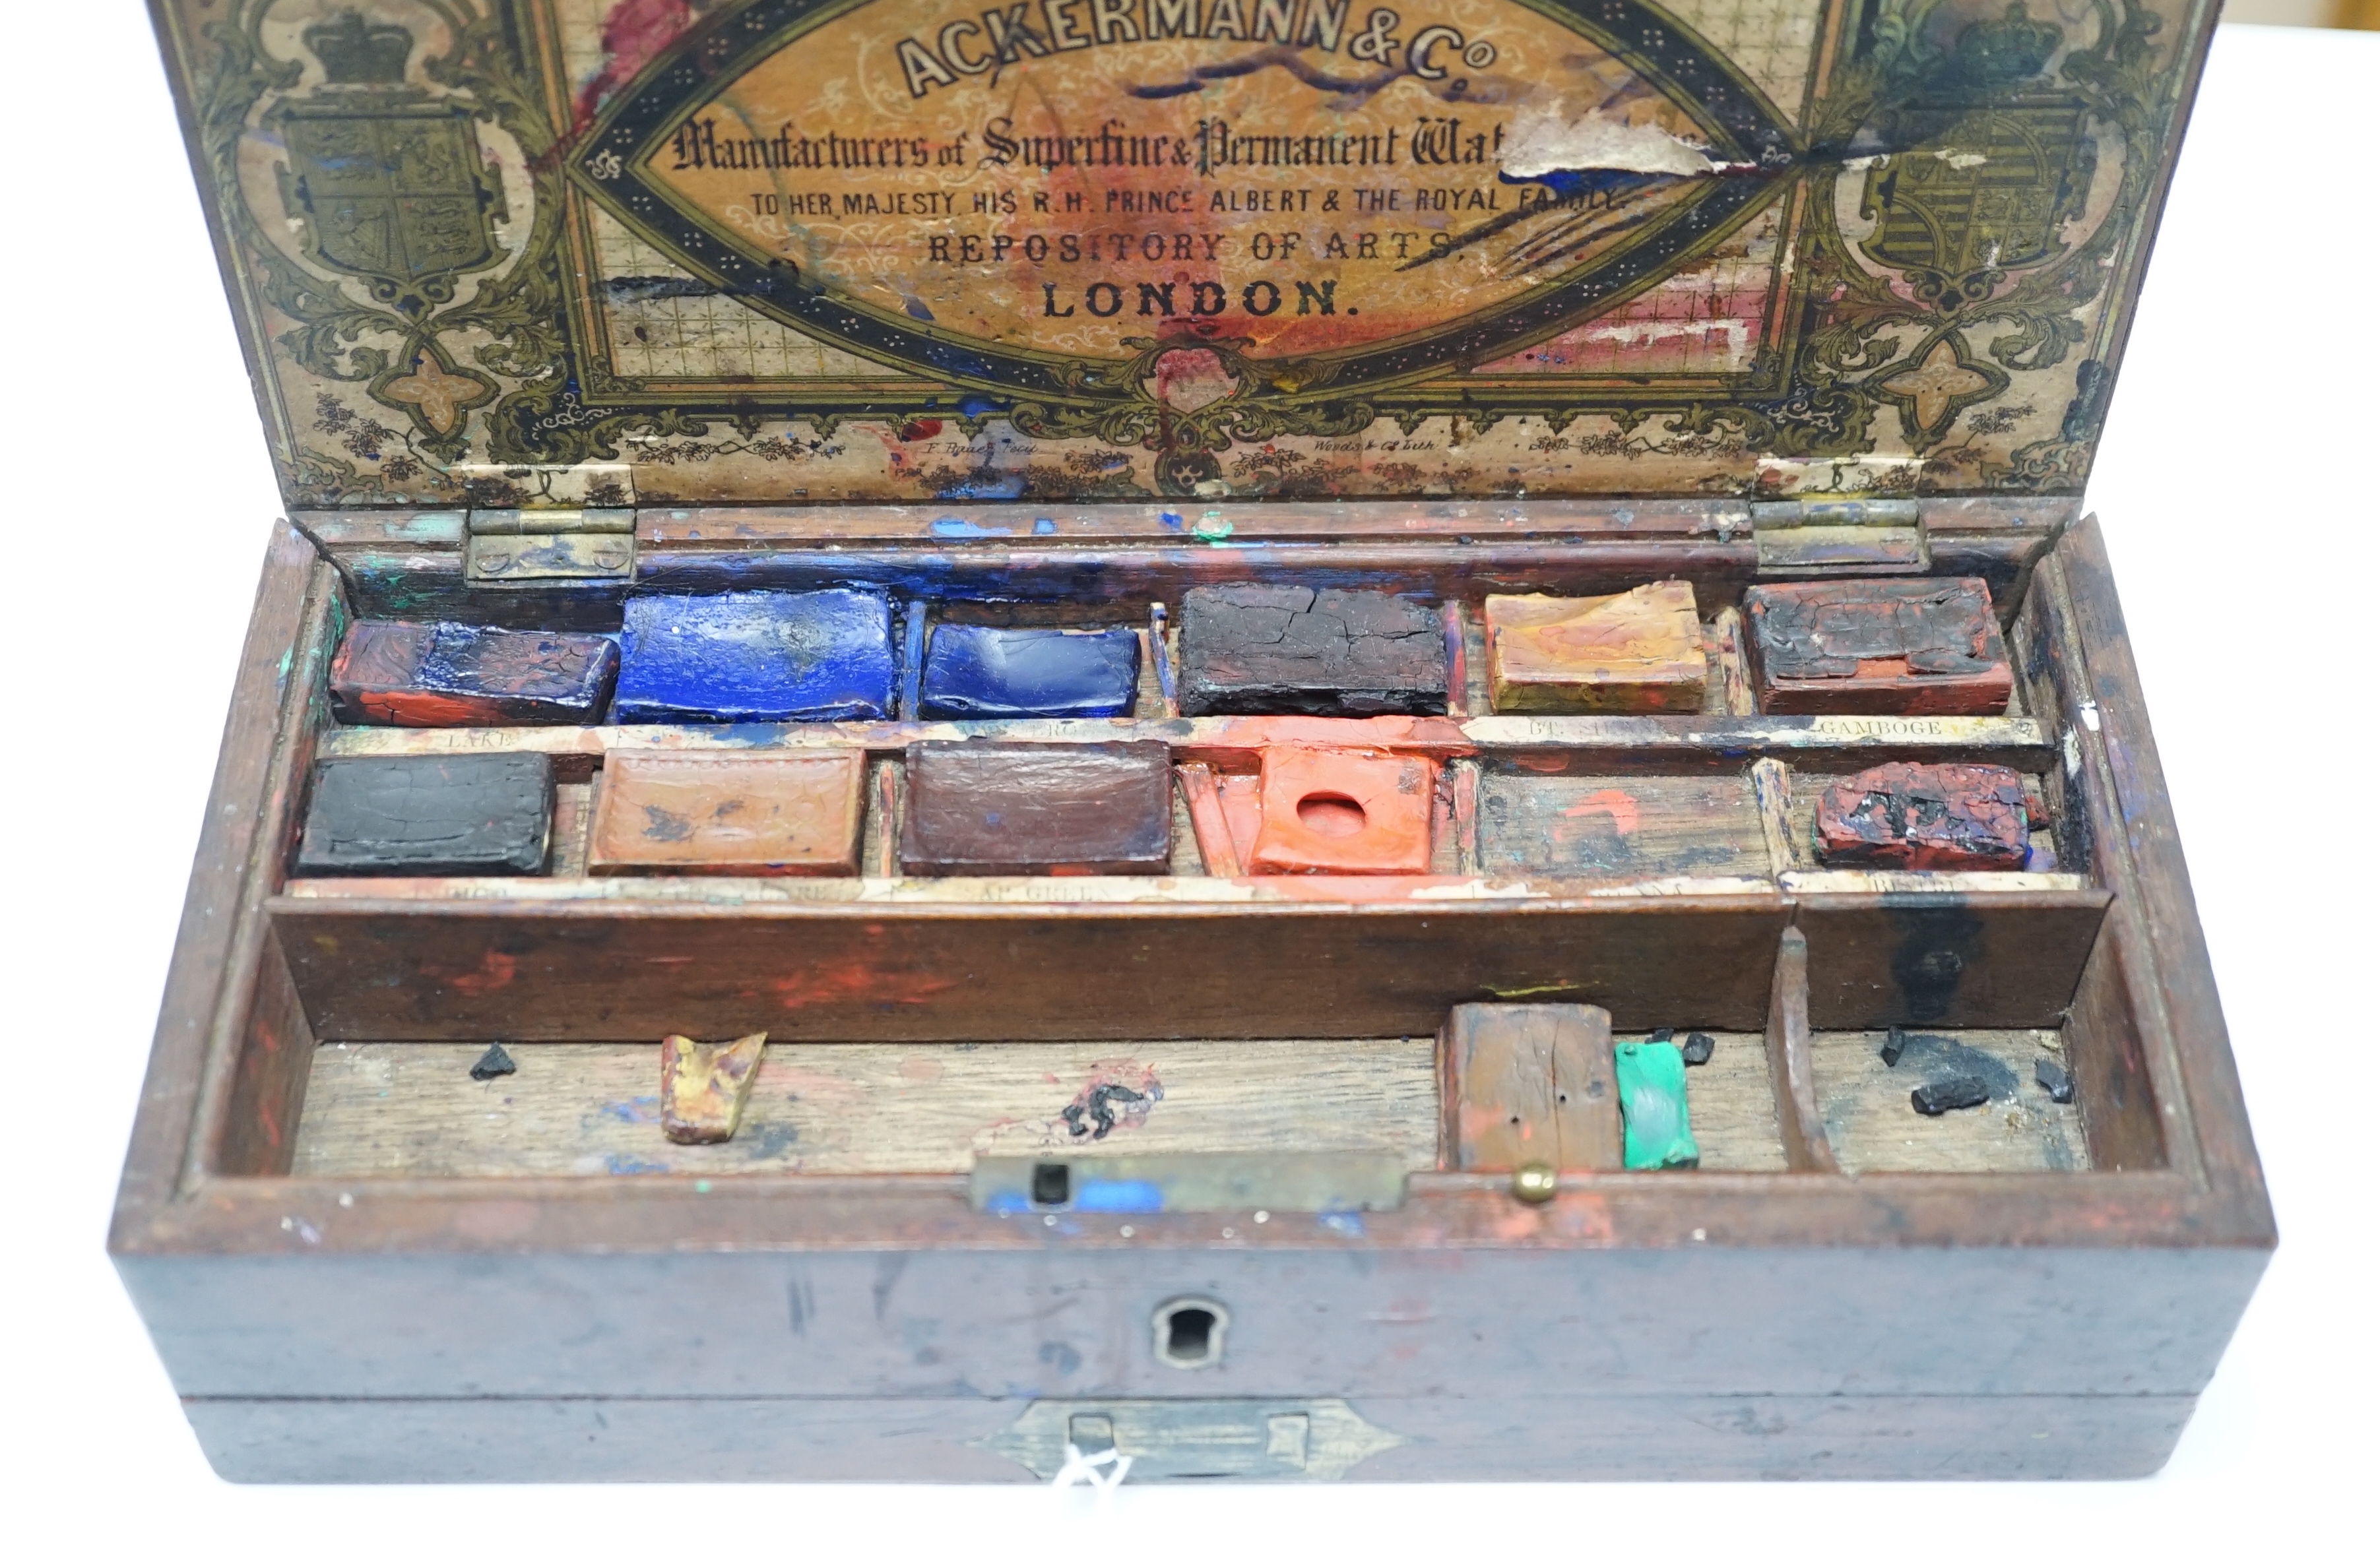 A mid 19th century Ackermann & Co. watercolour box